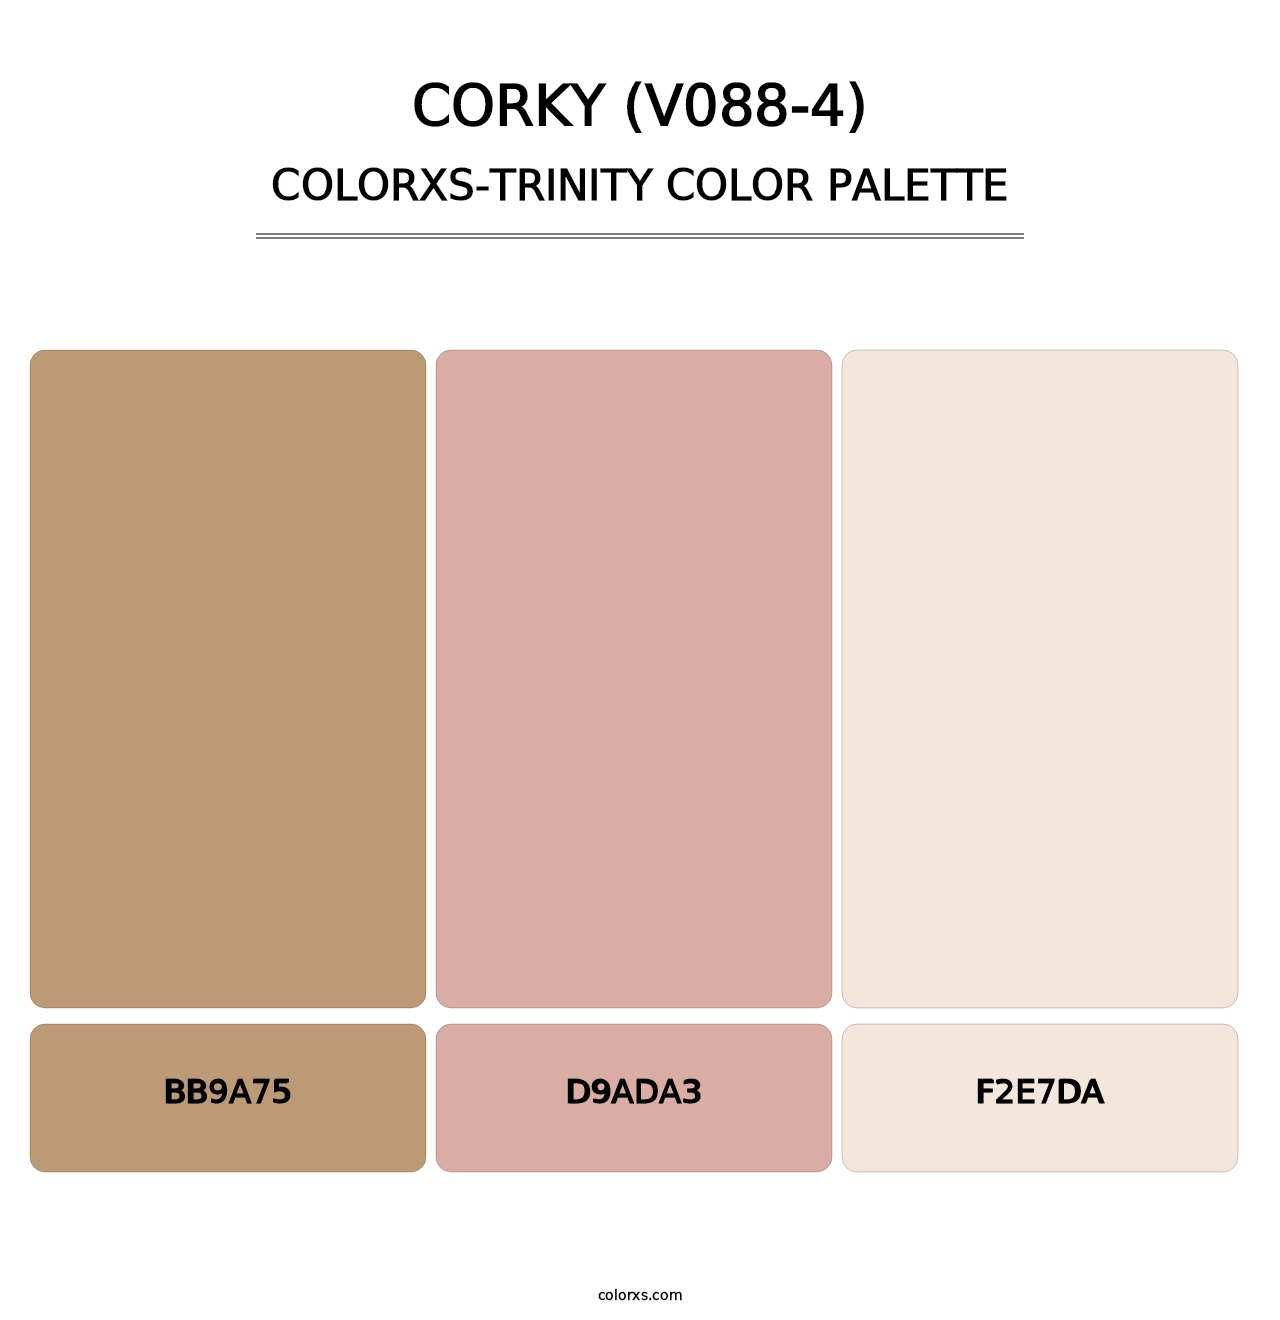 Corky (V088-4) - Colorxs Trinity Palette